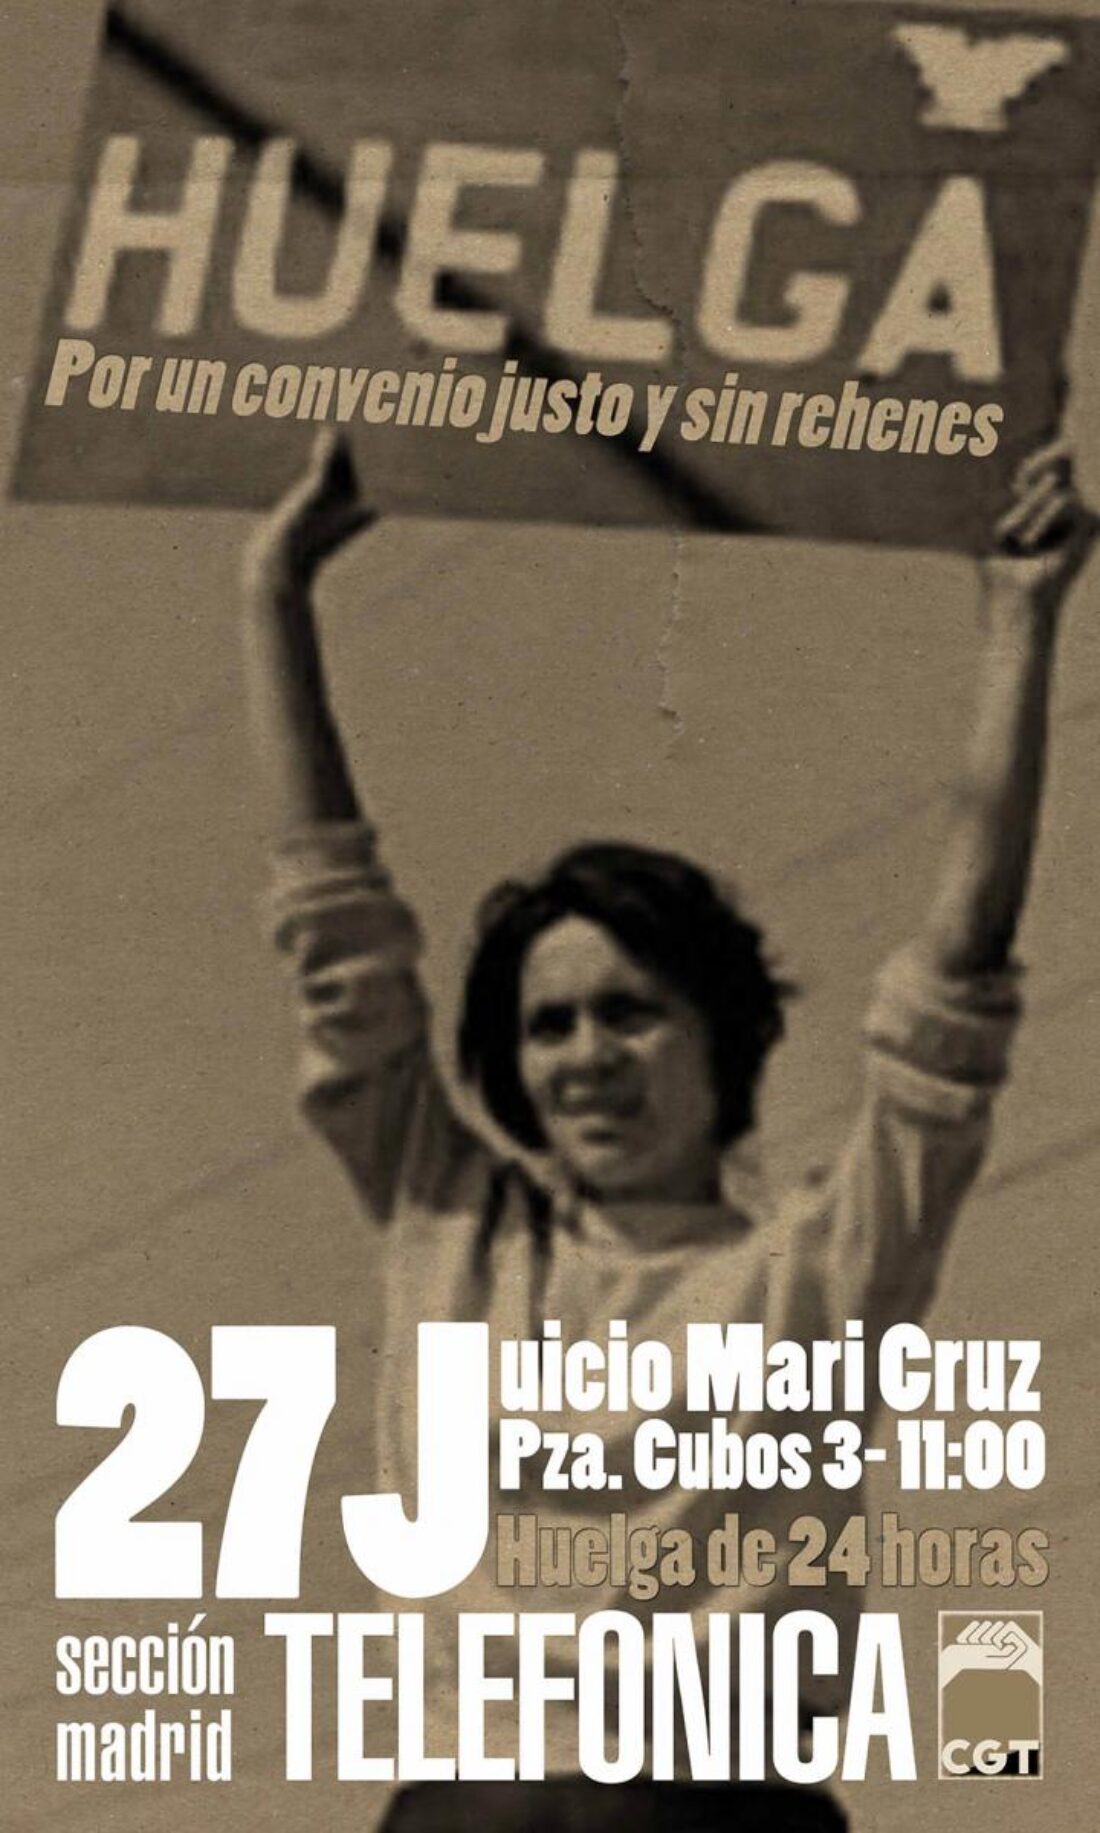 Telefónica 27 de Junio: ¡Huelga en Madrid por Mari Cruz!